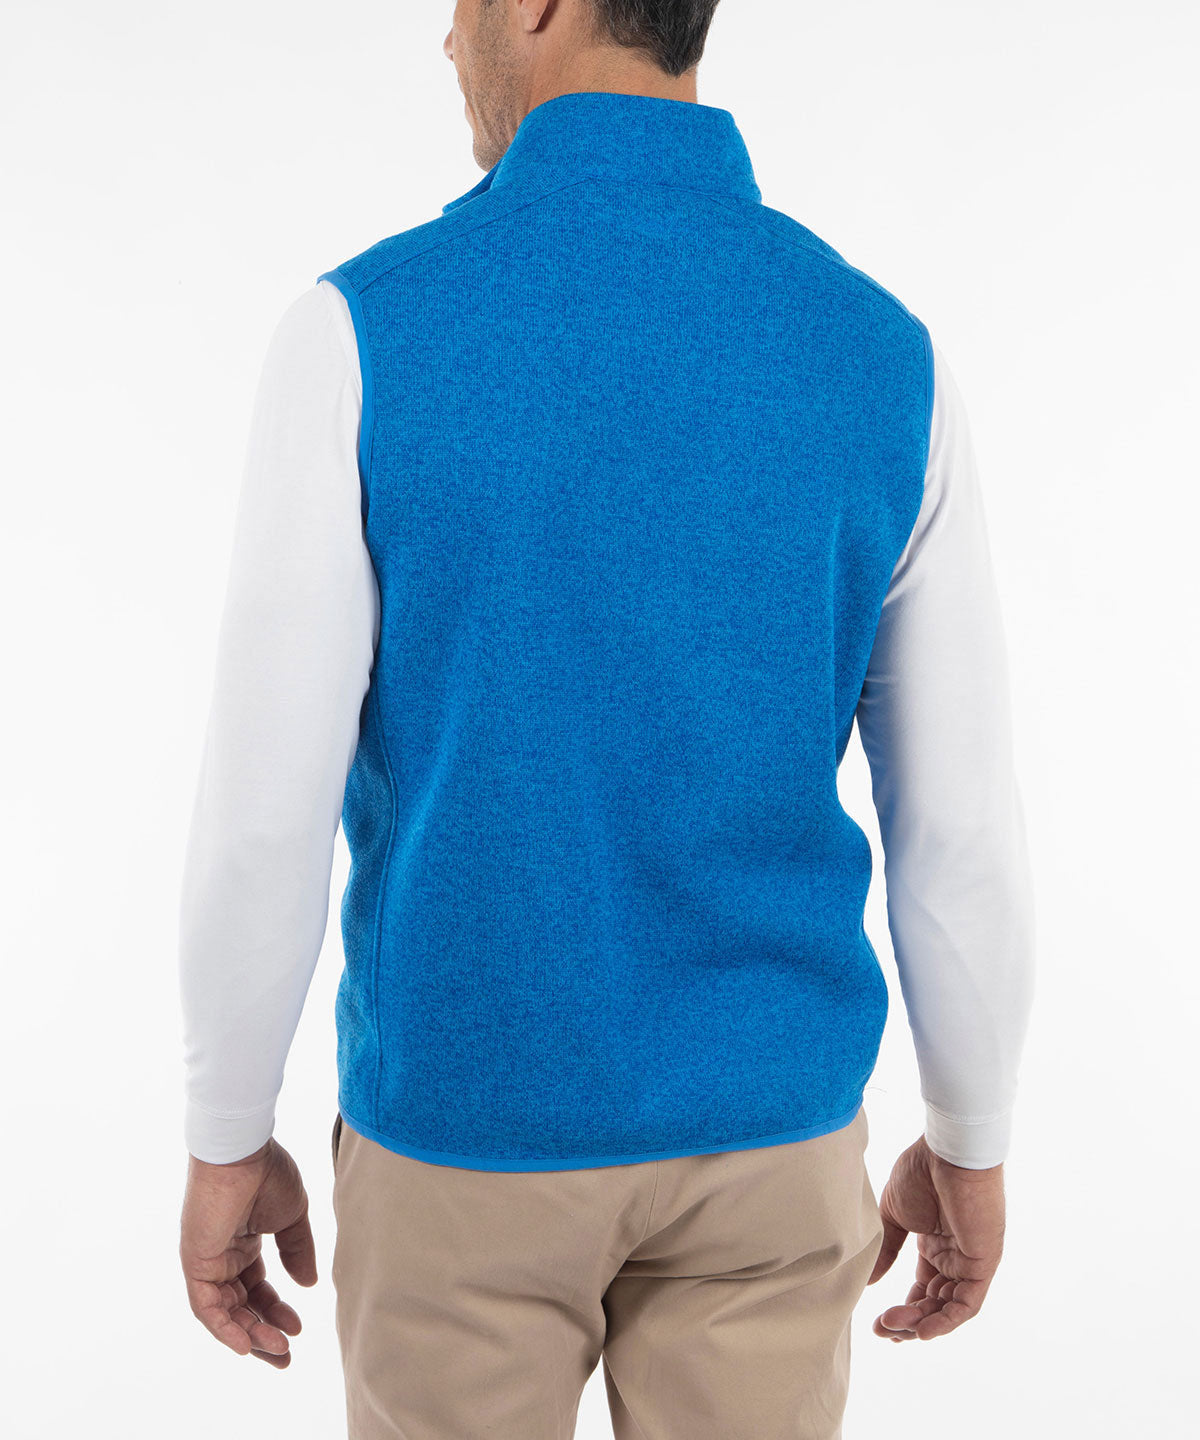 123rd U.S. Open Men's Bobby Jones Heathered Full Zip Fleece Vest